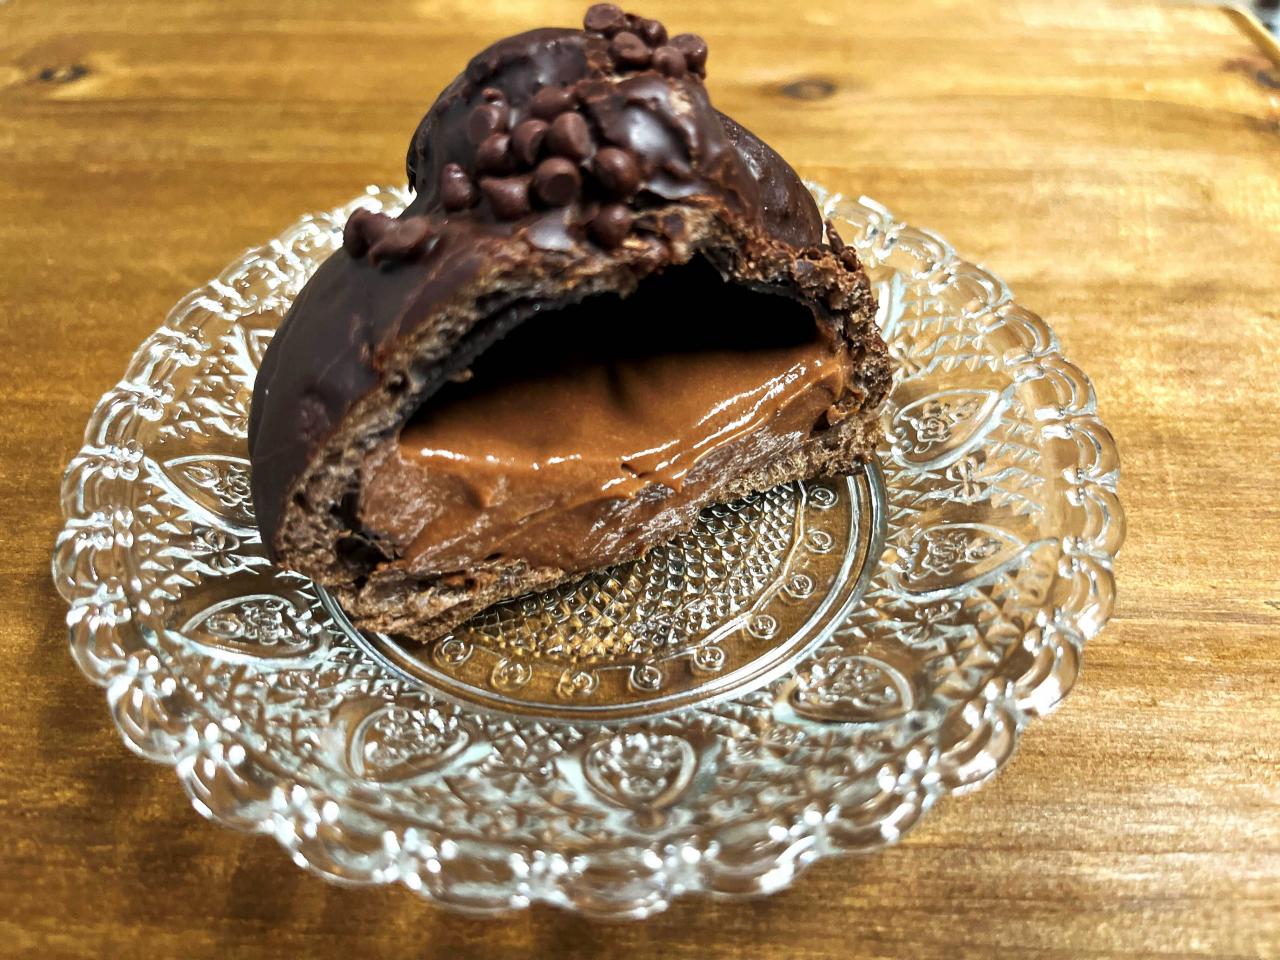 セコマ　セイコーマート　スイーツ　シュークリーム　チョコレート　チョコ　ご当地　新発売　コンビニ　北海道　冬